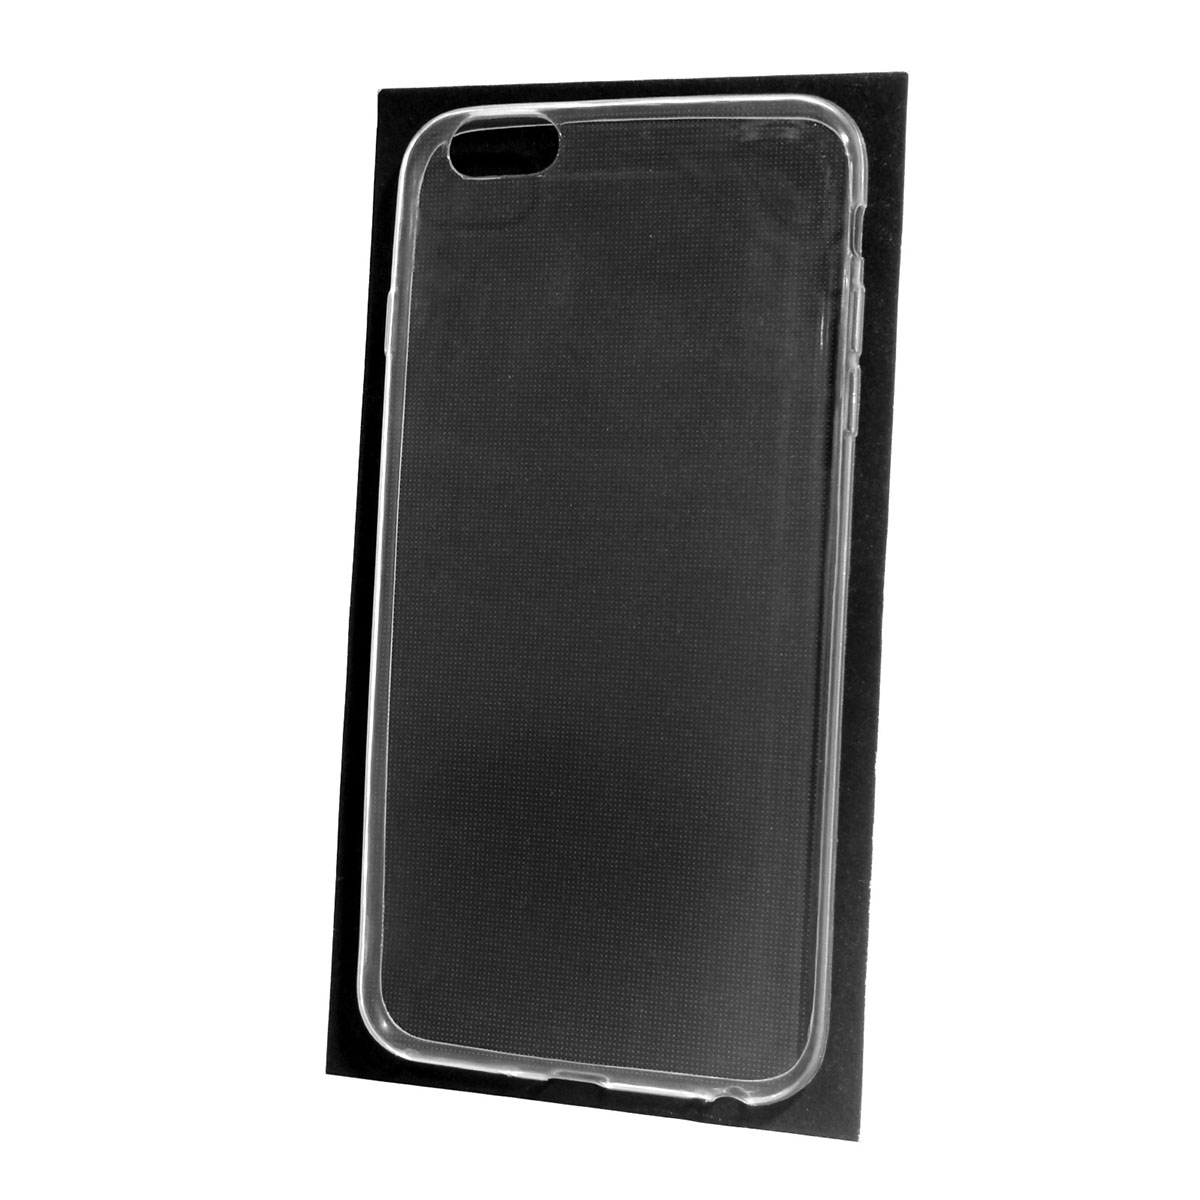 Чехол накладка для APPLE iPhone 6 Plus, 6S Plus, силикон, прозрачный.